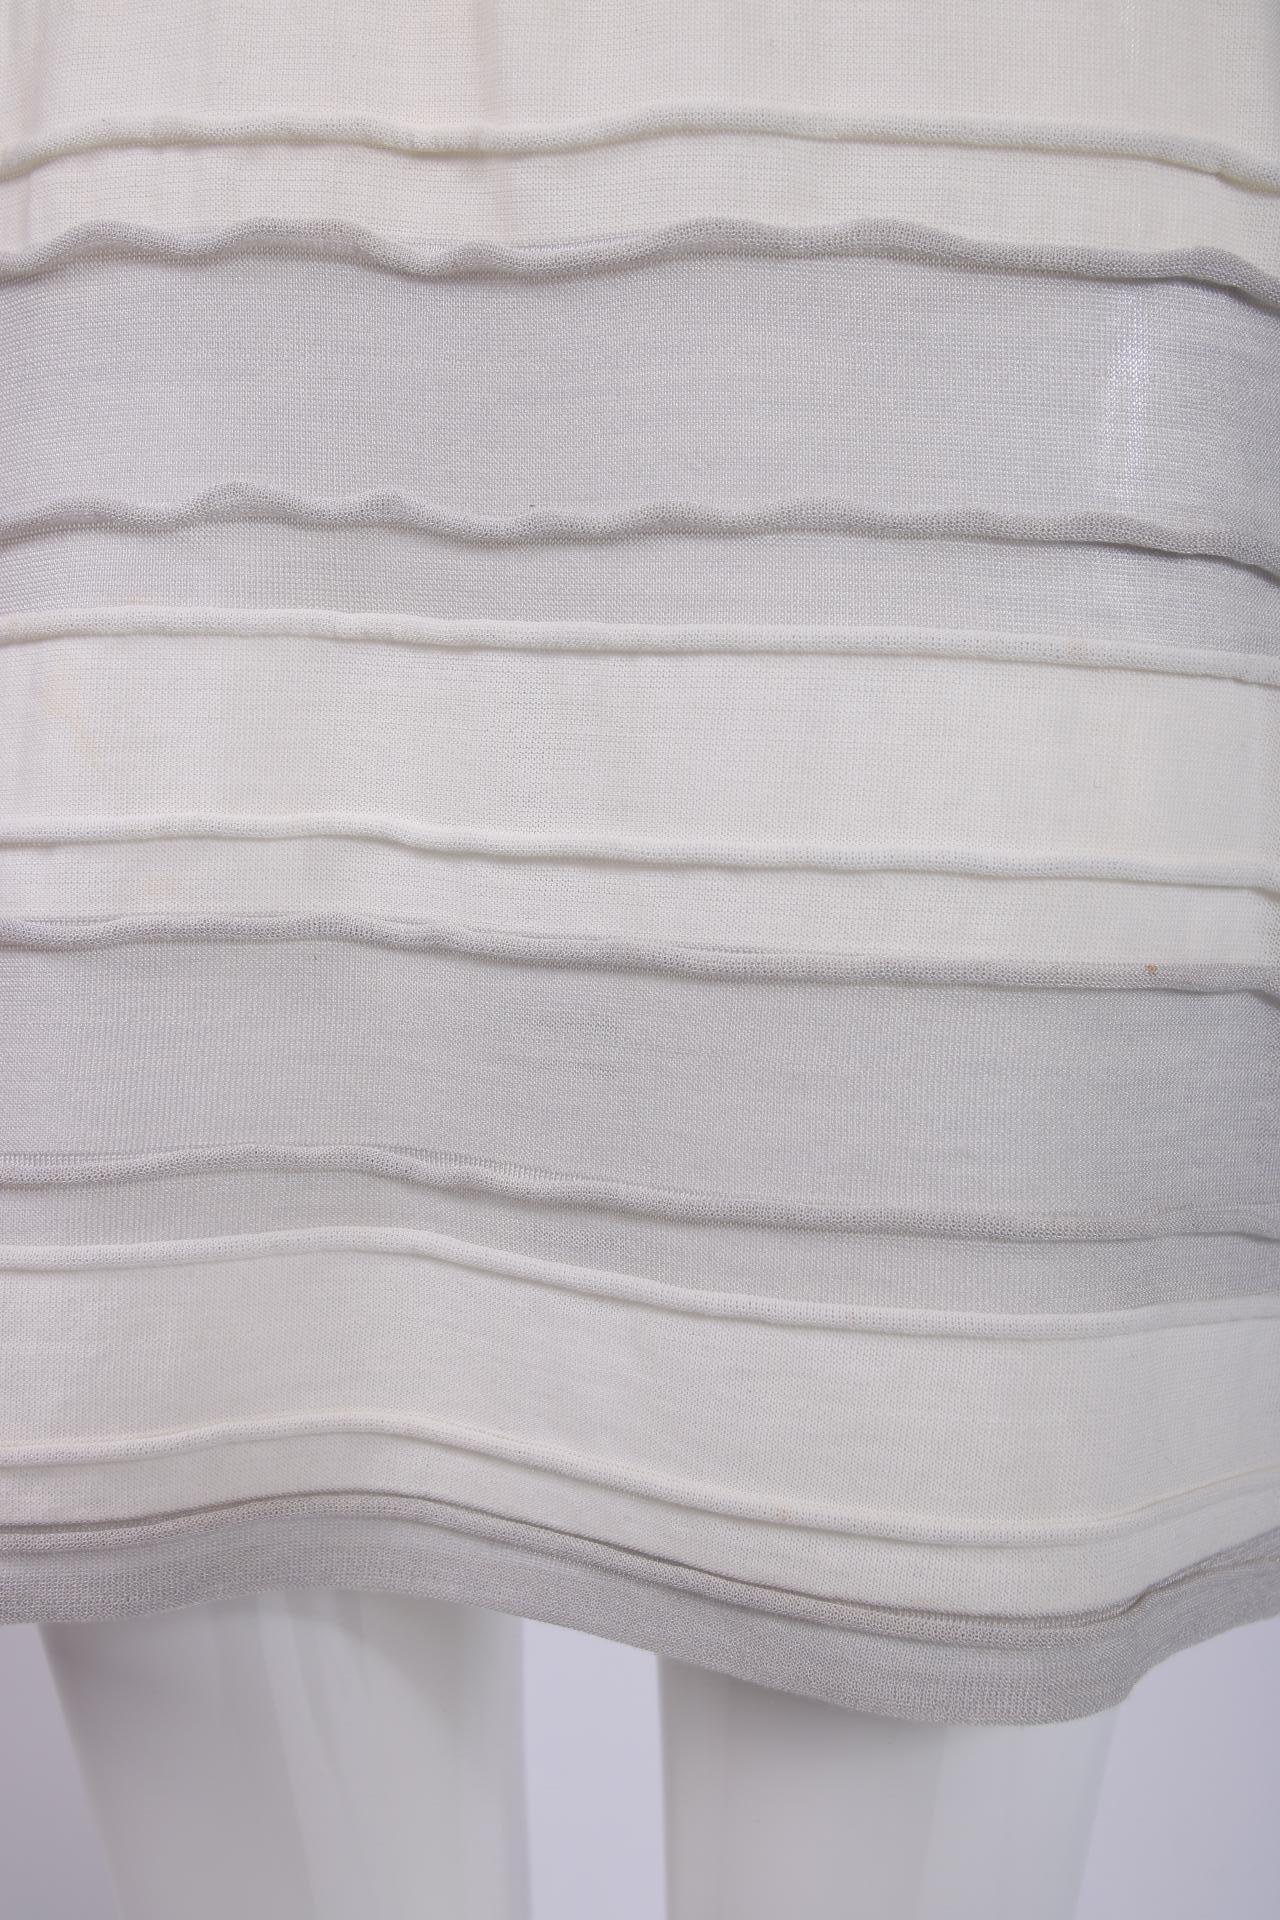 Chanel - Robe courte rayée grise et blanche 2009 Pour femmes en vente